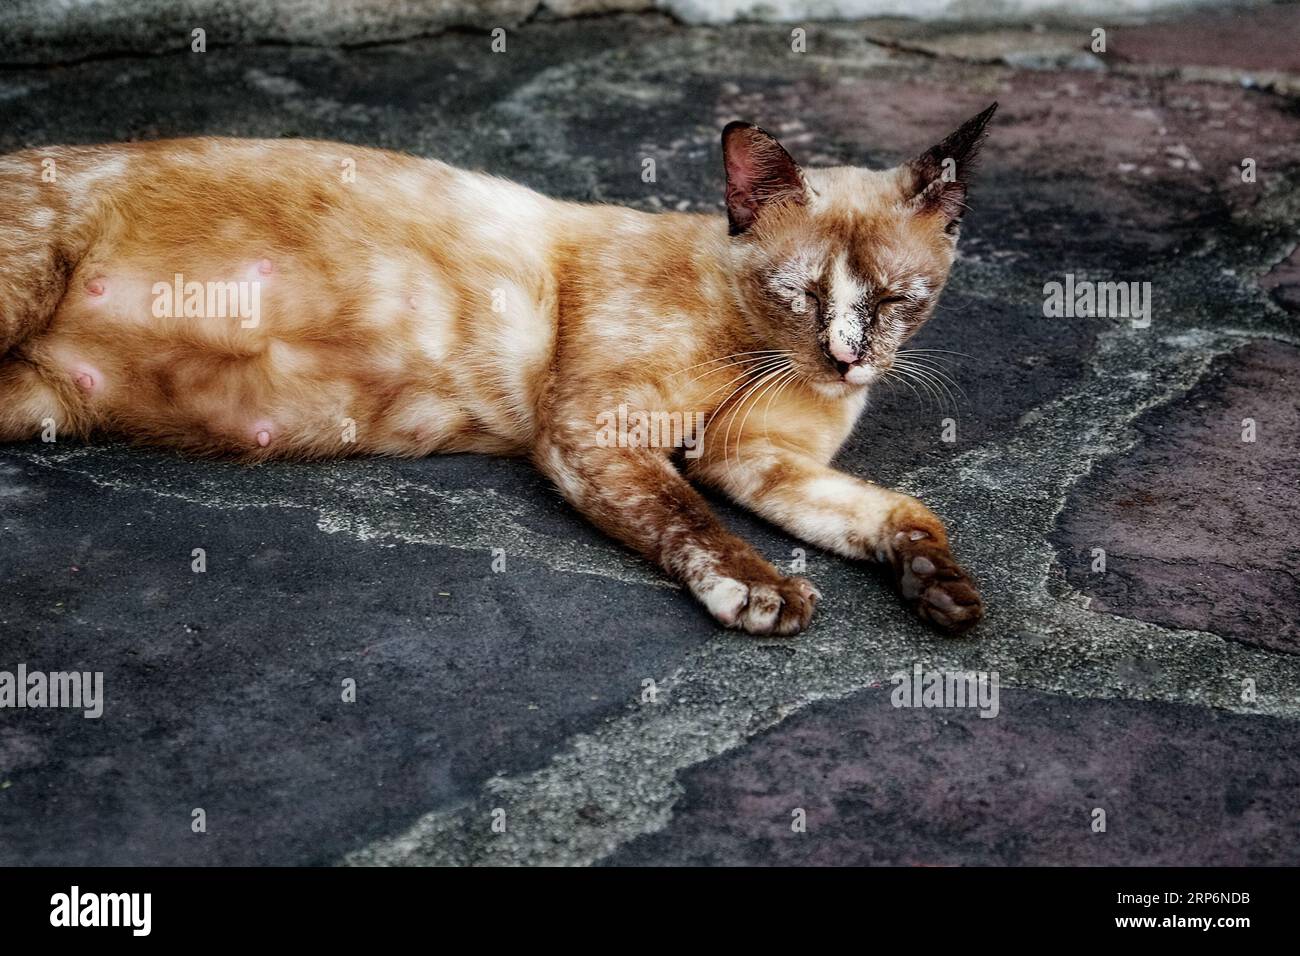 Un chat allongé sur un sol en pierre. Le chat est de couleur brune et semble dormir. Le chat est couché sur le côté avec sa tête reposant sur le sol. T Banque D'Images